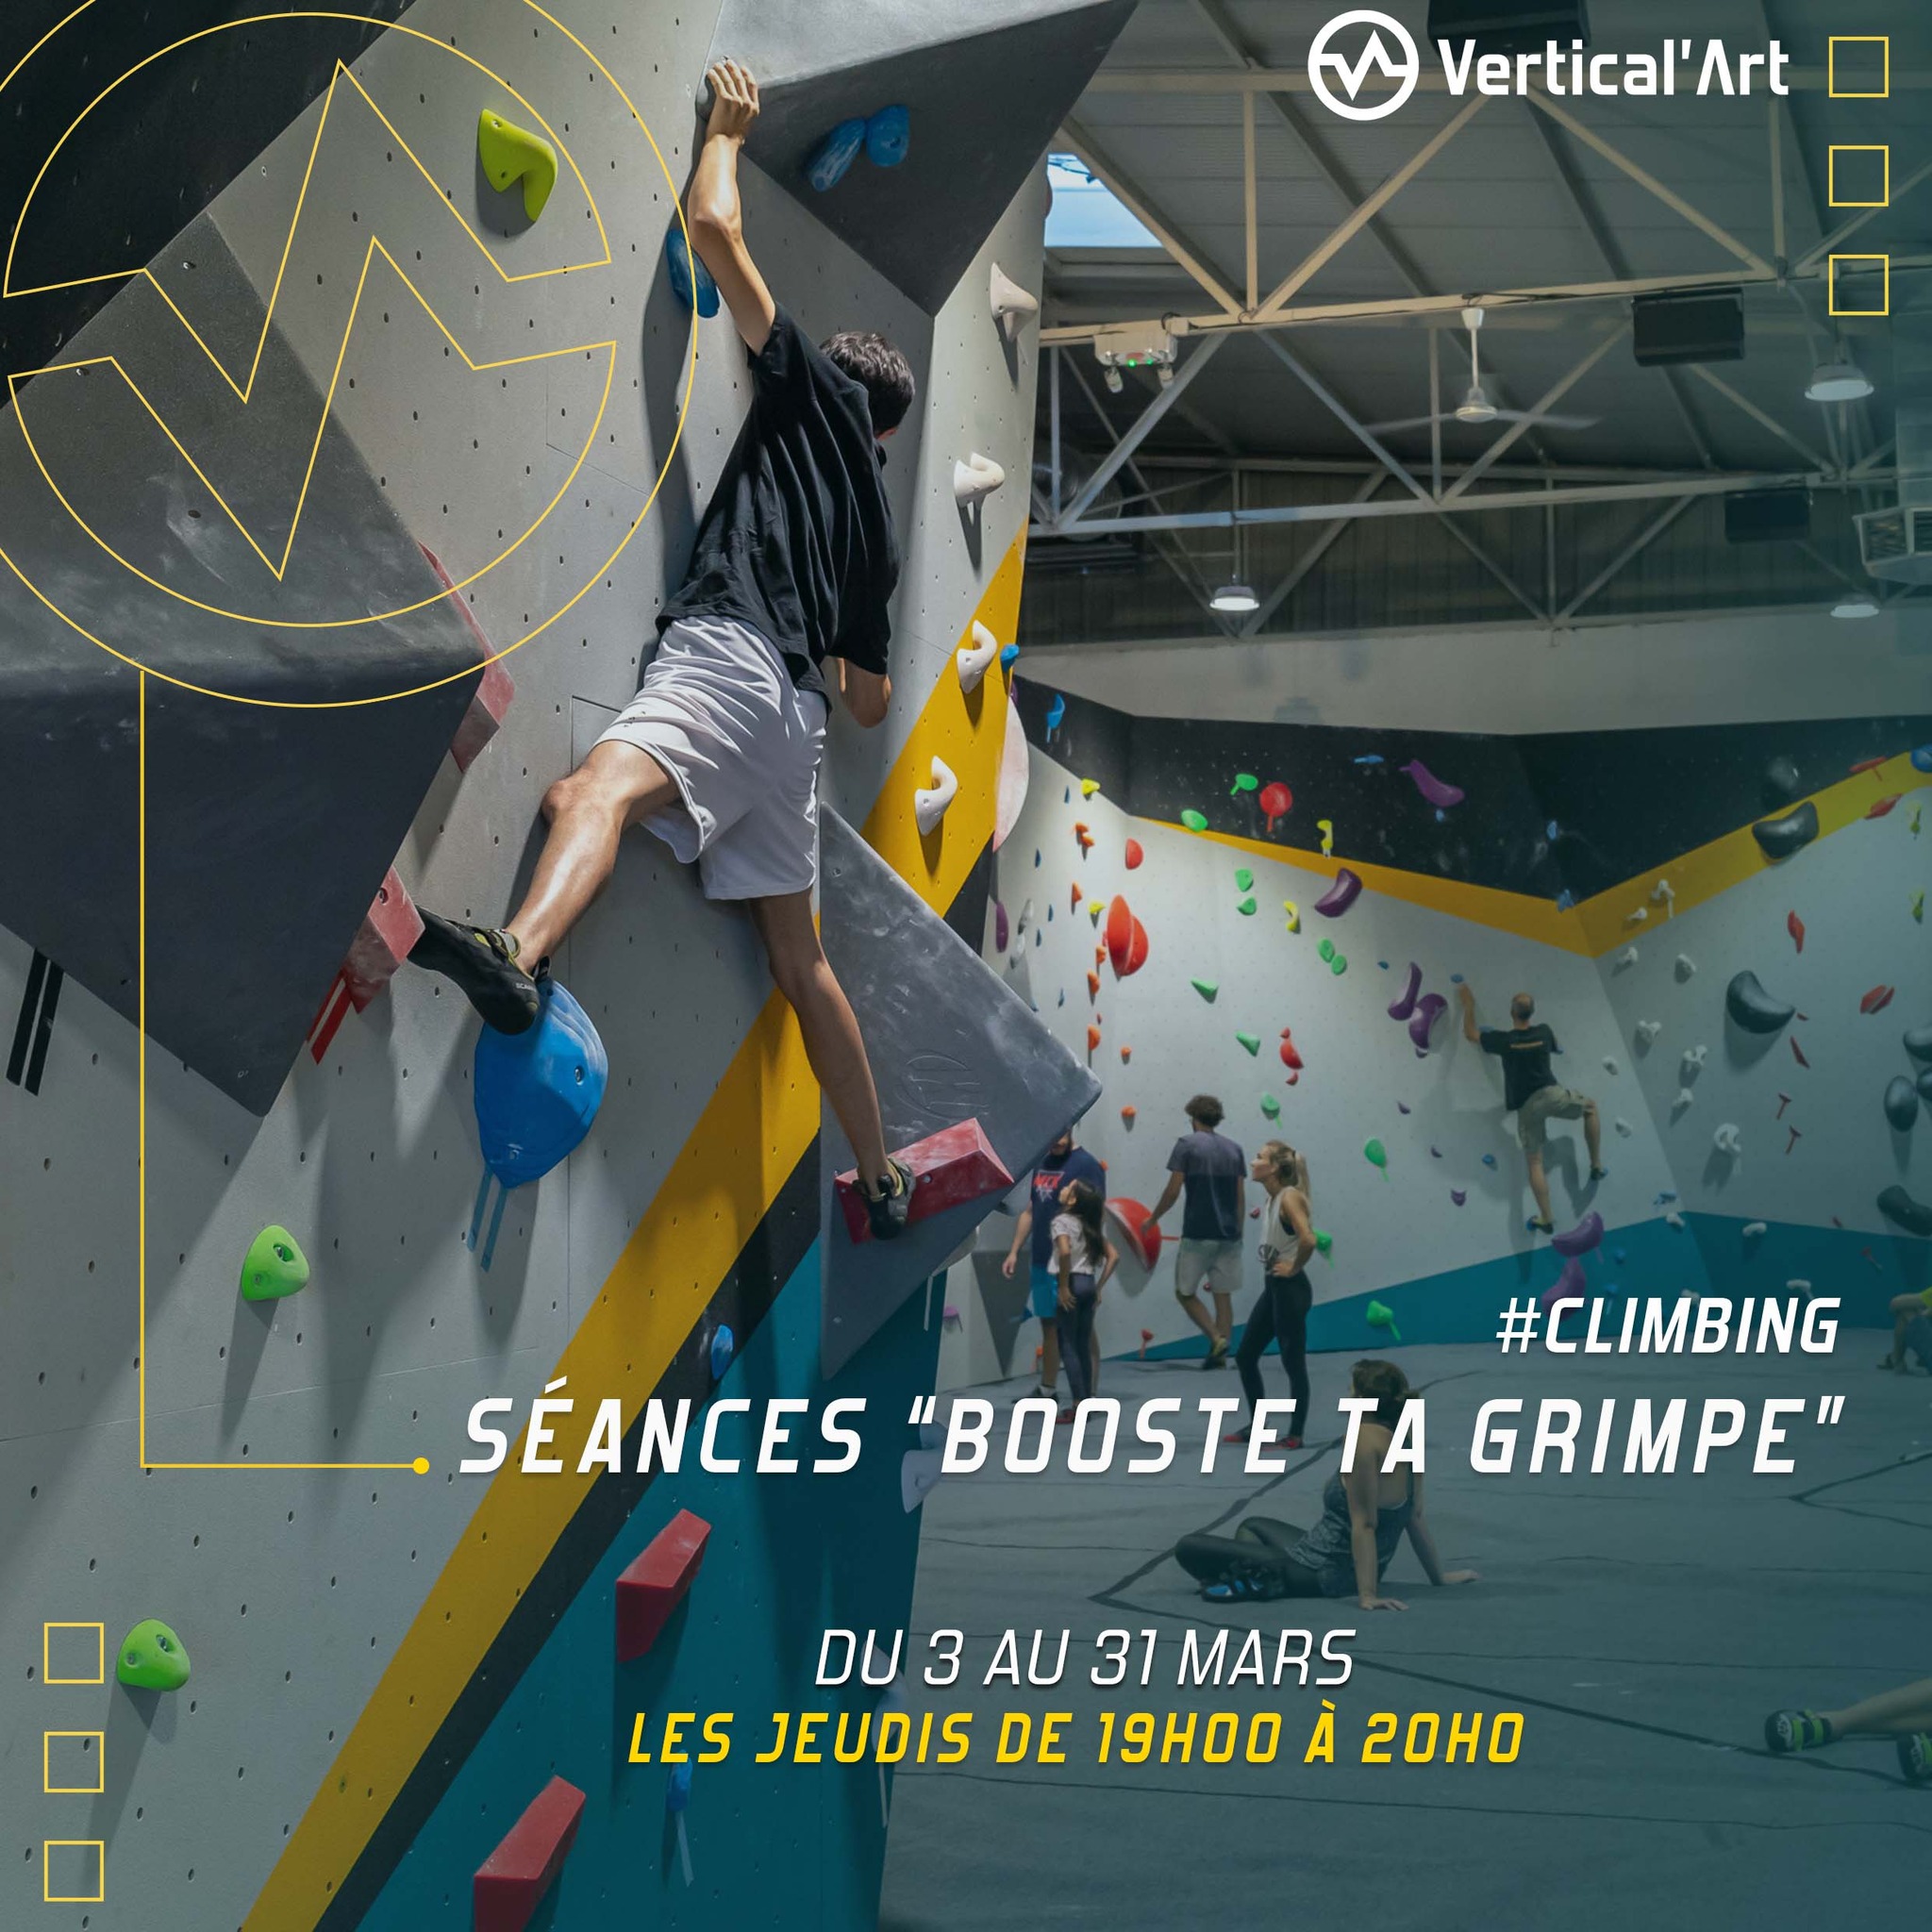 Séances Booste ta grimpe tous les jeudis en mars à Vertical'Art Toulon, stage de cinq séances pour progresser en escalade, ouvert aux débutants et confirmés